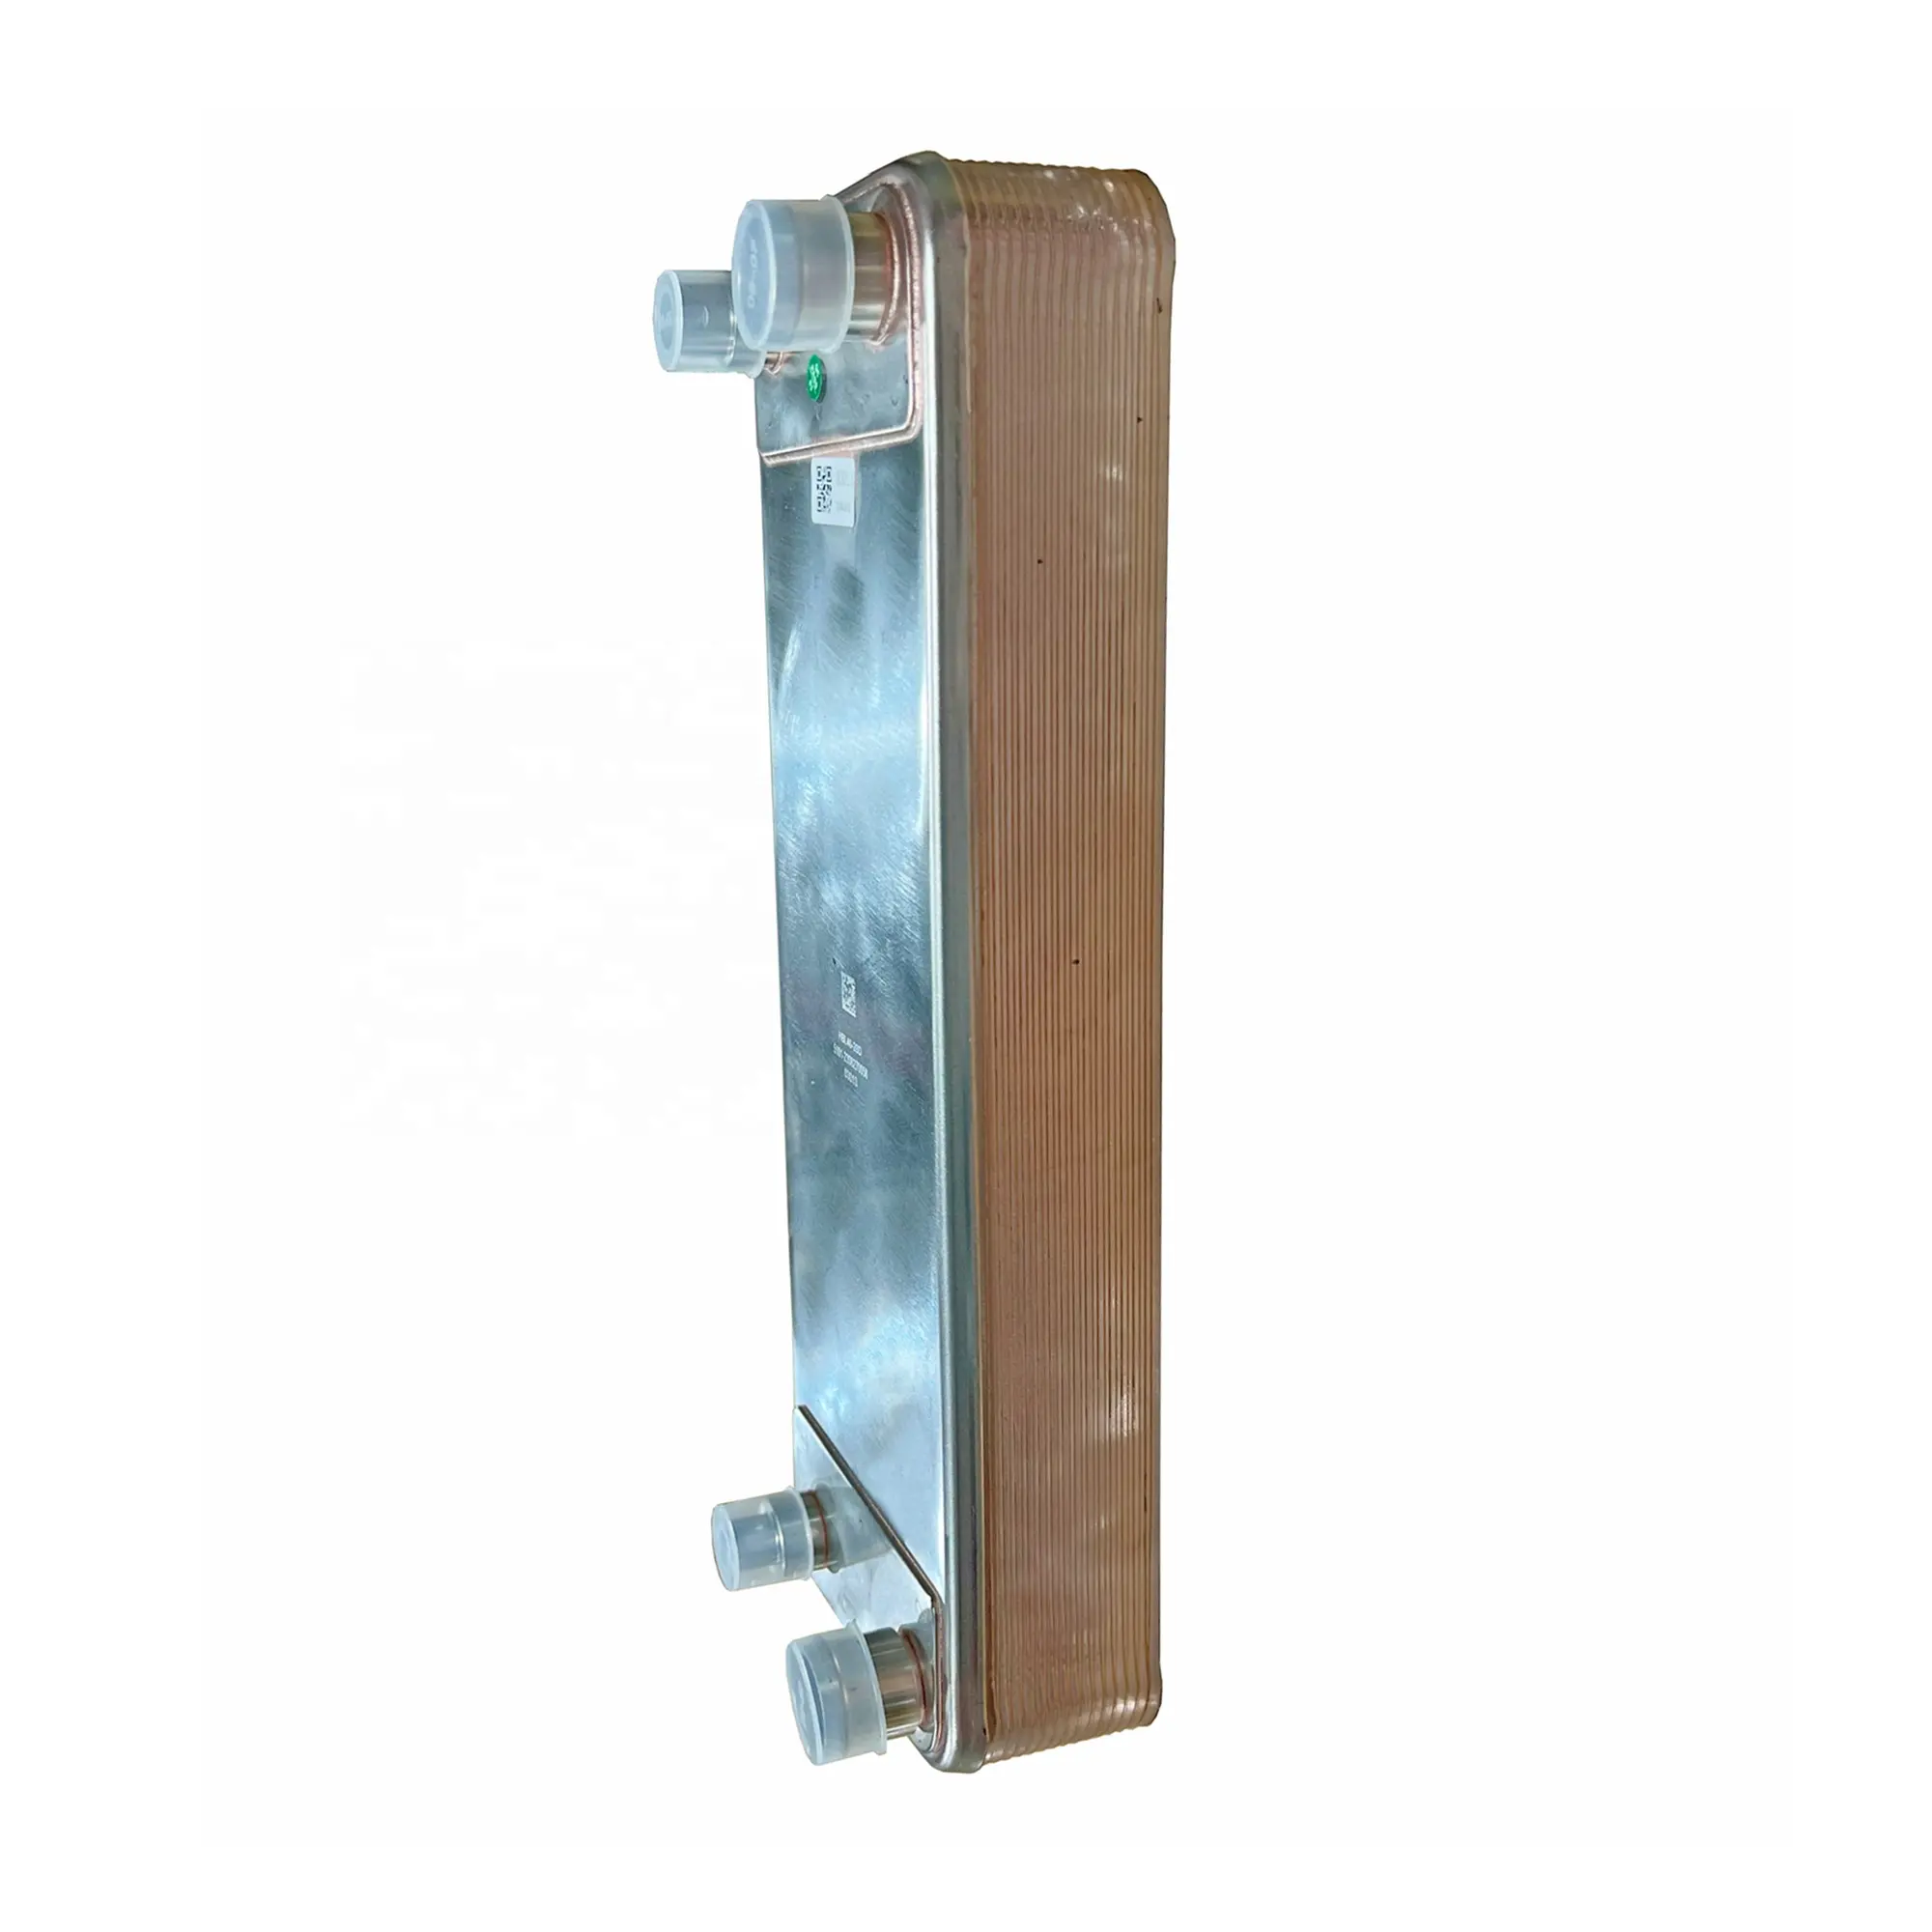 HBL40/B26 Refrigerante Condensador Calefacción central Cobre Placa soldada Intercambiador de calor